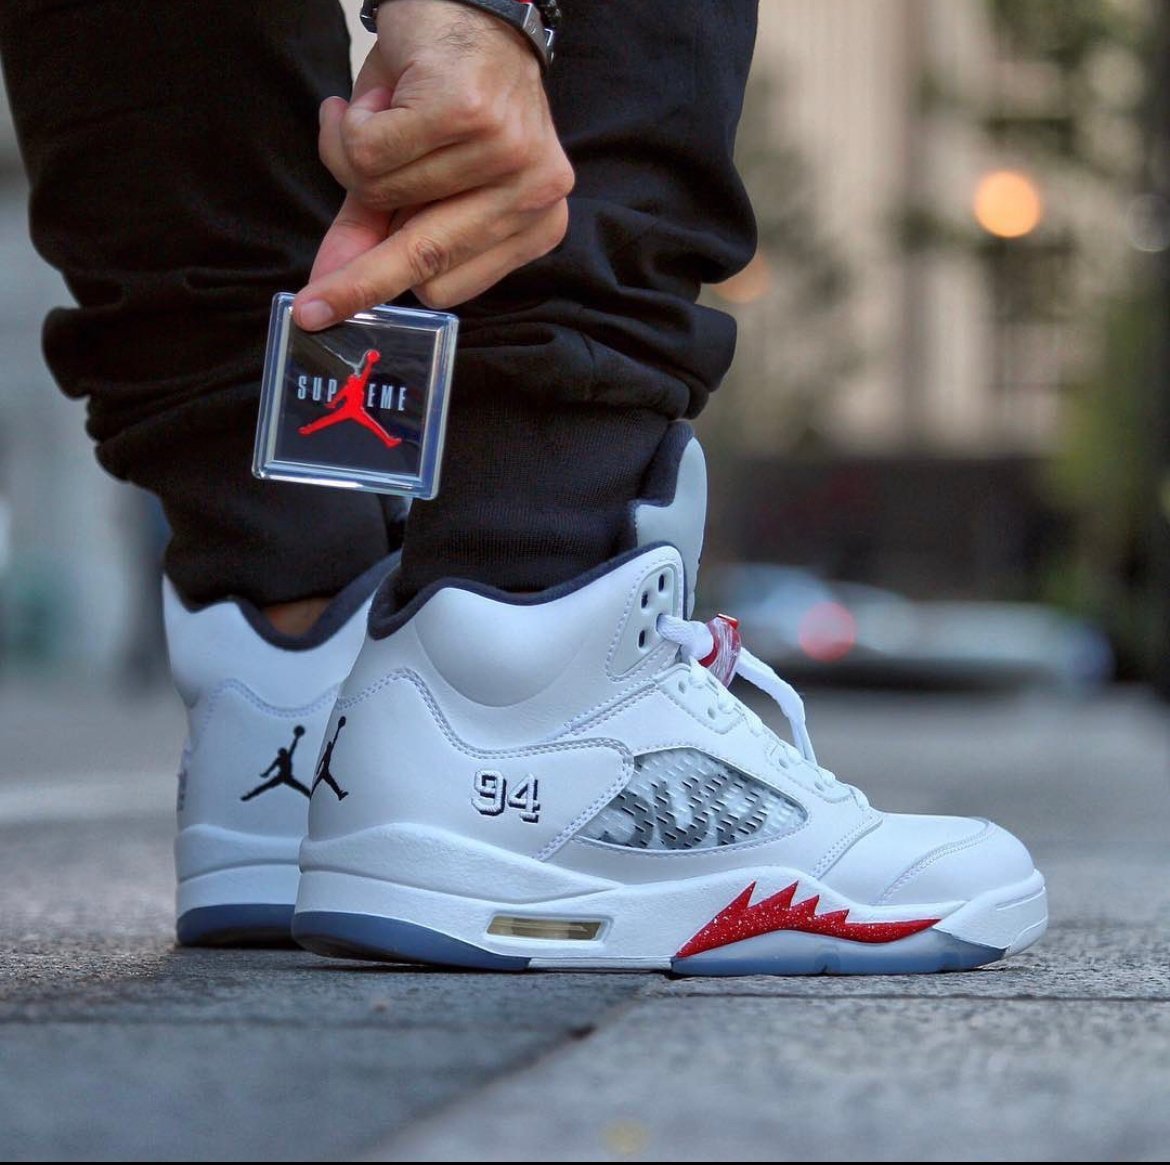 Air Jordan Retro 5 “Supreme” – Beyond Brands